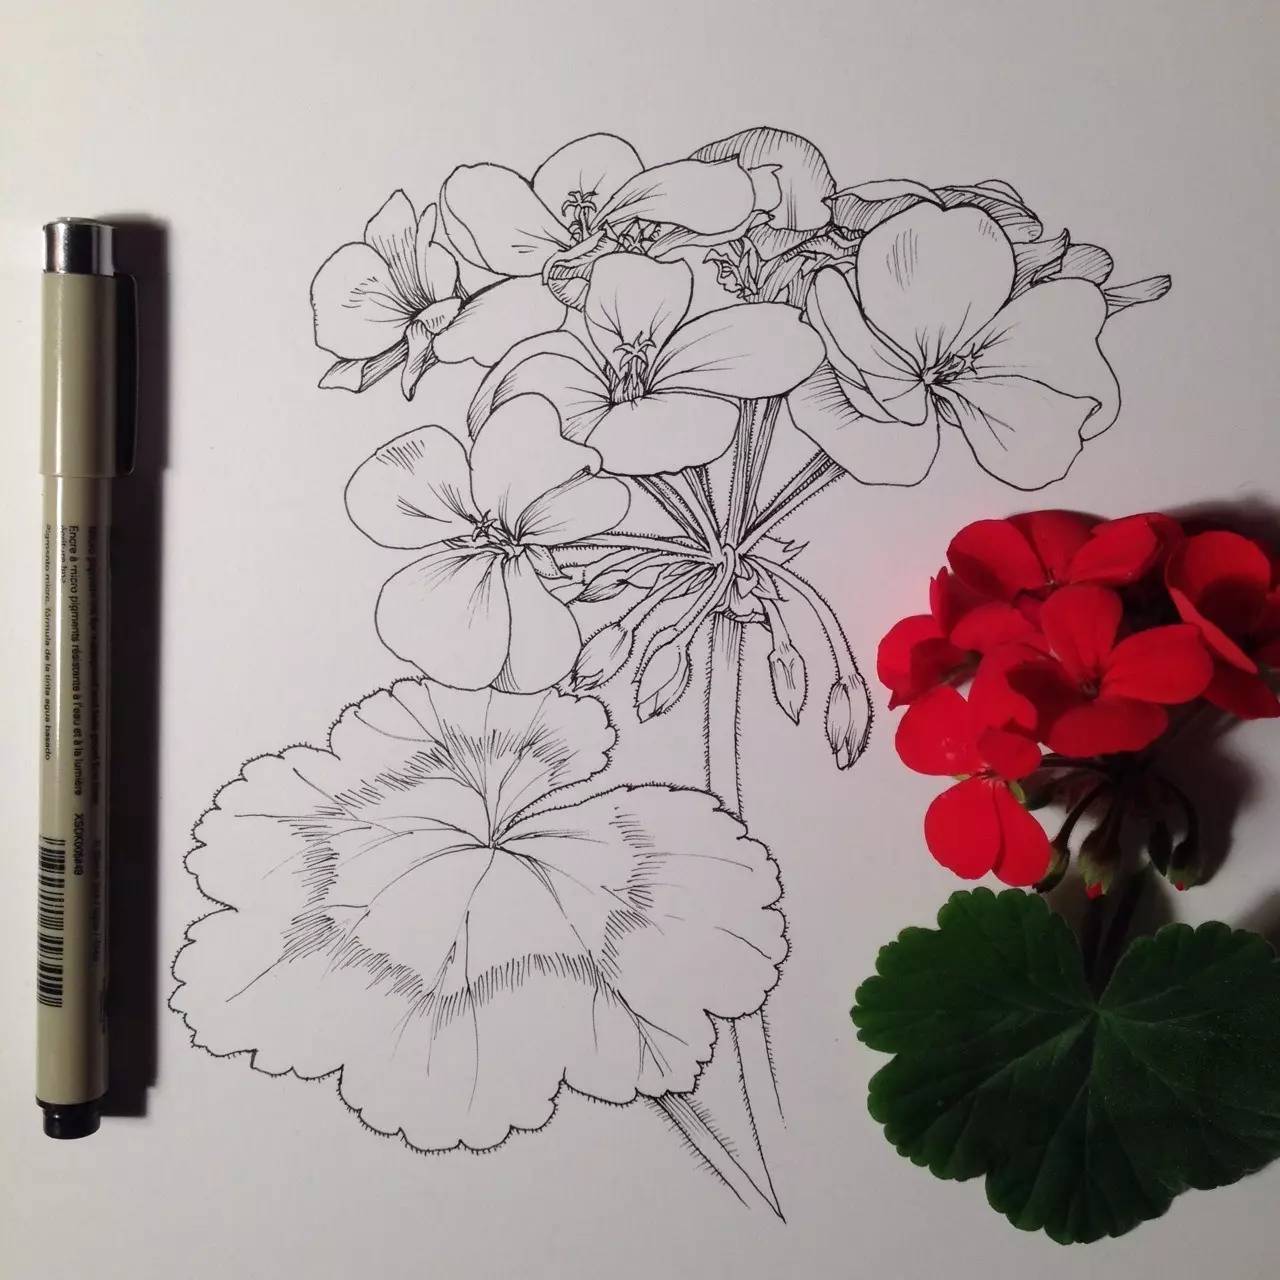 花卉有各种画法,可是要怎样才可以画得美美的?